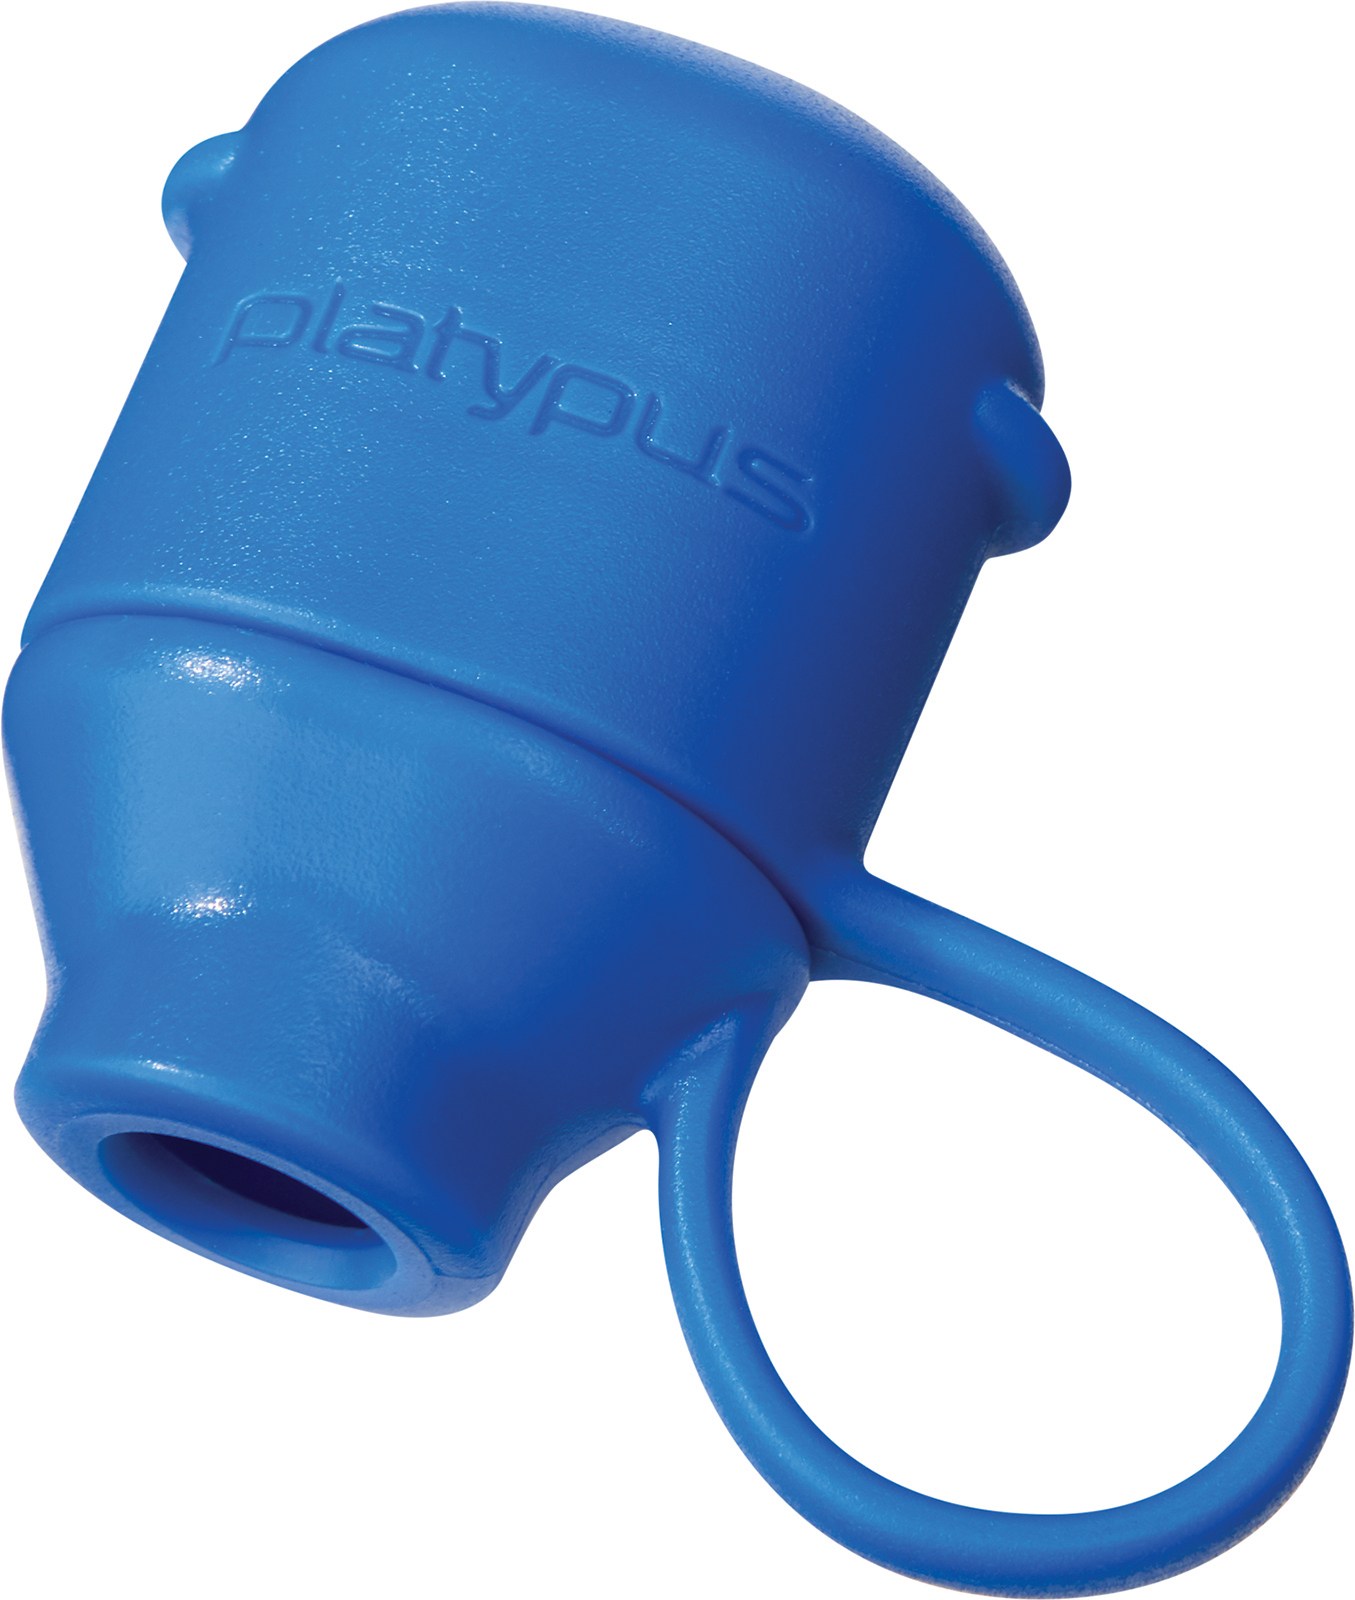 Крышка прикусного клапана Platypus, синий 4 8 12 шт крышка клапана шины светящаяся крышка для автомобильного колеса пылезащитная крышка светящаяся крышка клапана шины для всех моде